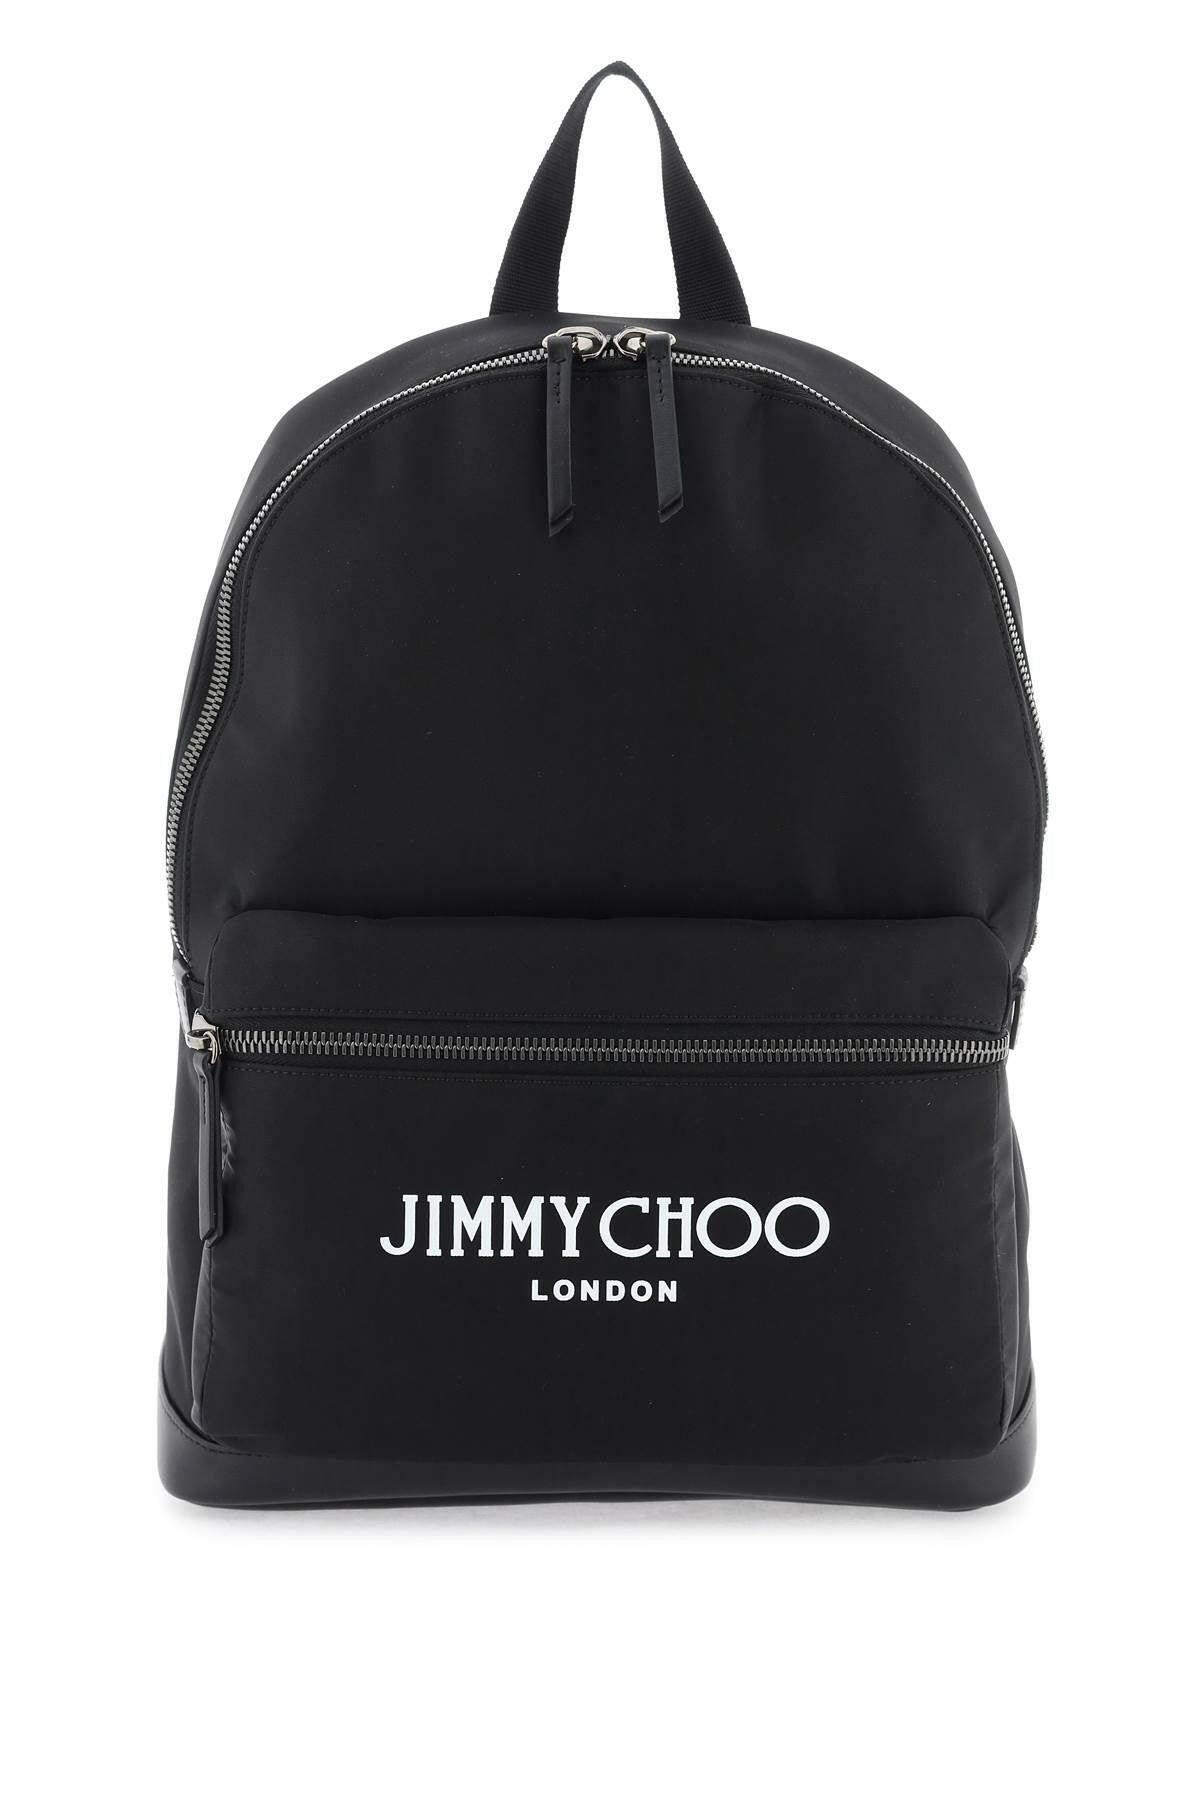 Jimmy Choo 'Wilmer' Backpack - JOHN JULIA